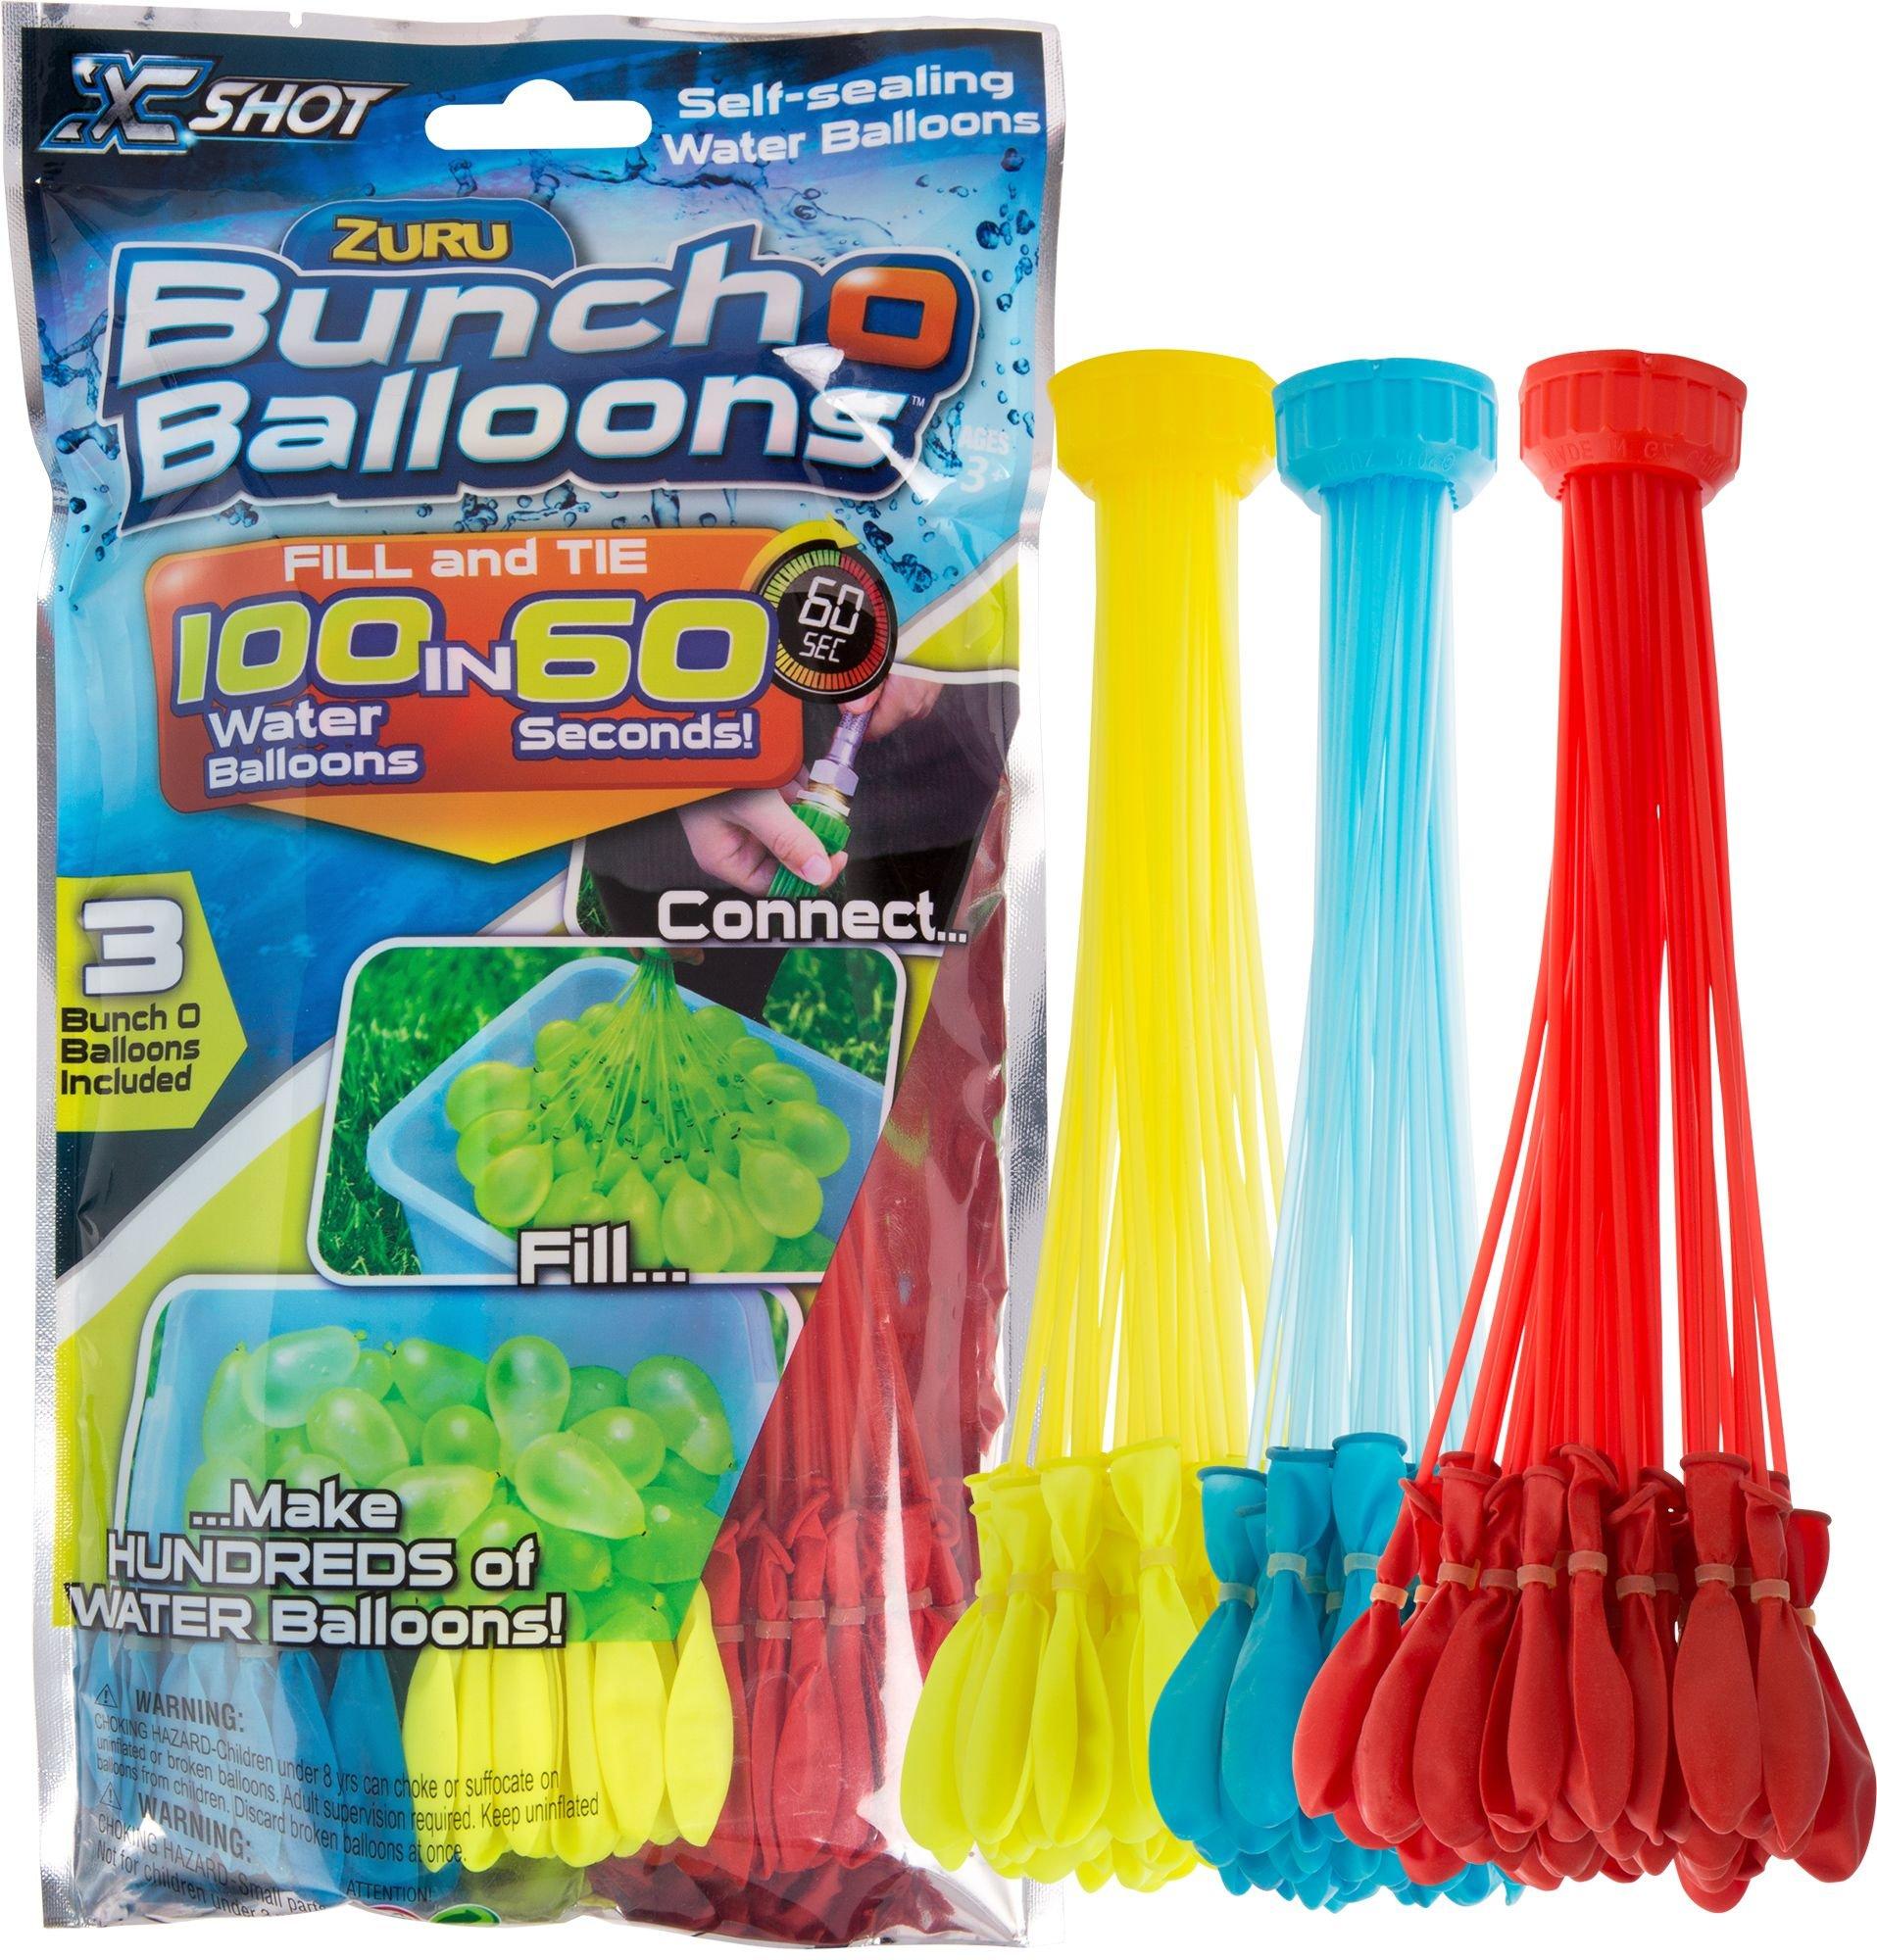 ZURU Bunch O Balloons Rapid Fill Water Balloons